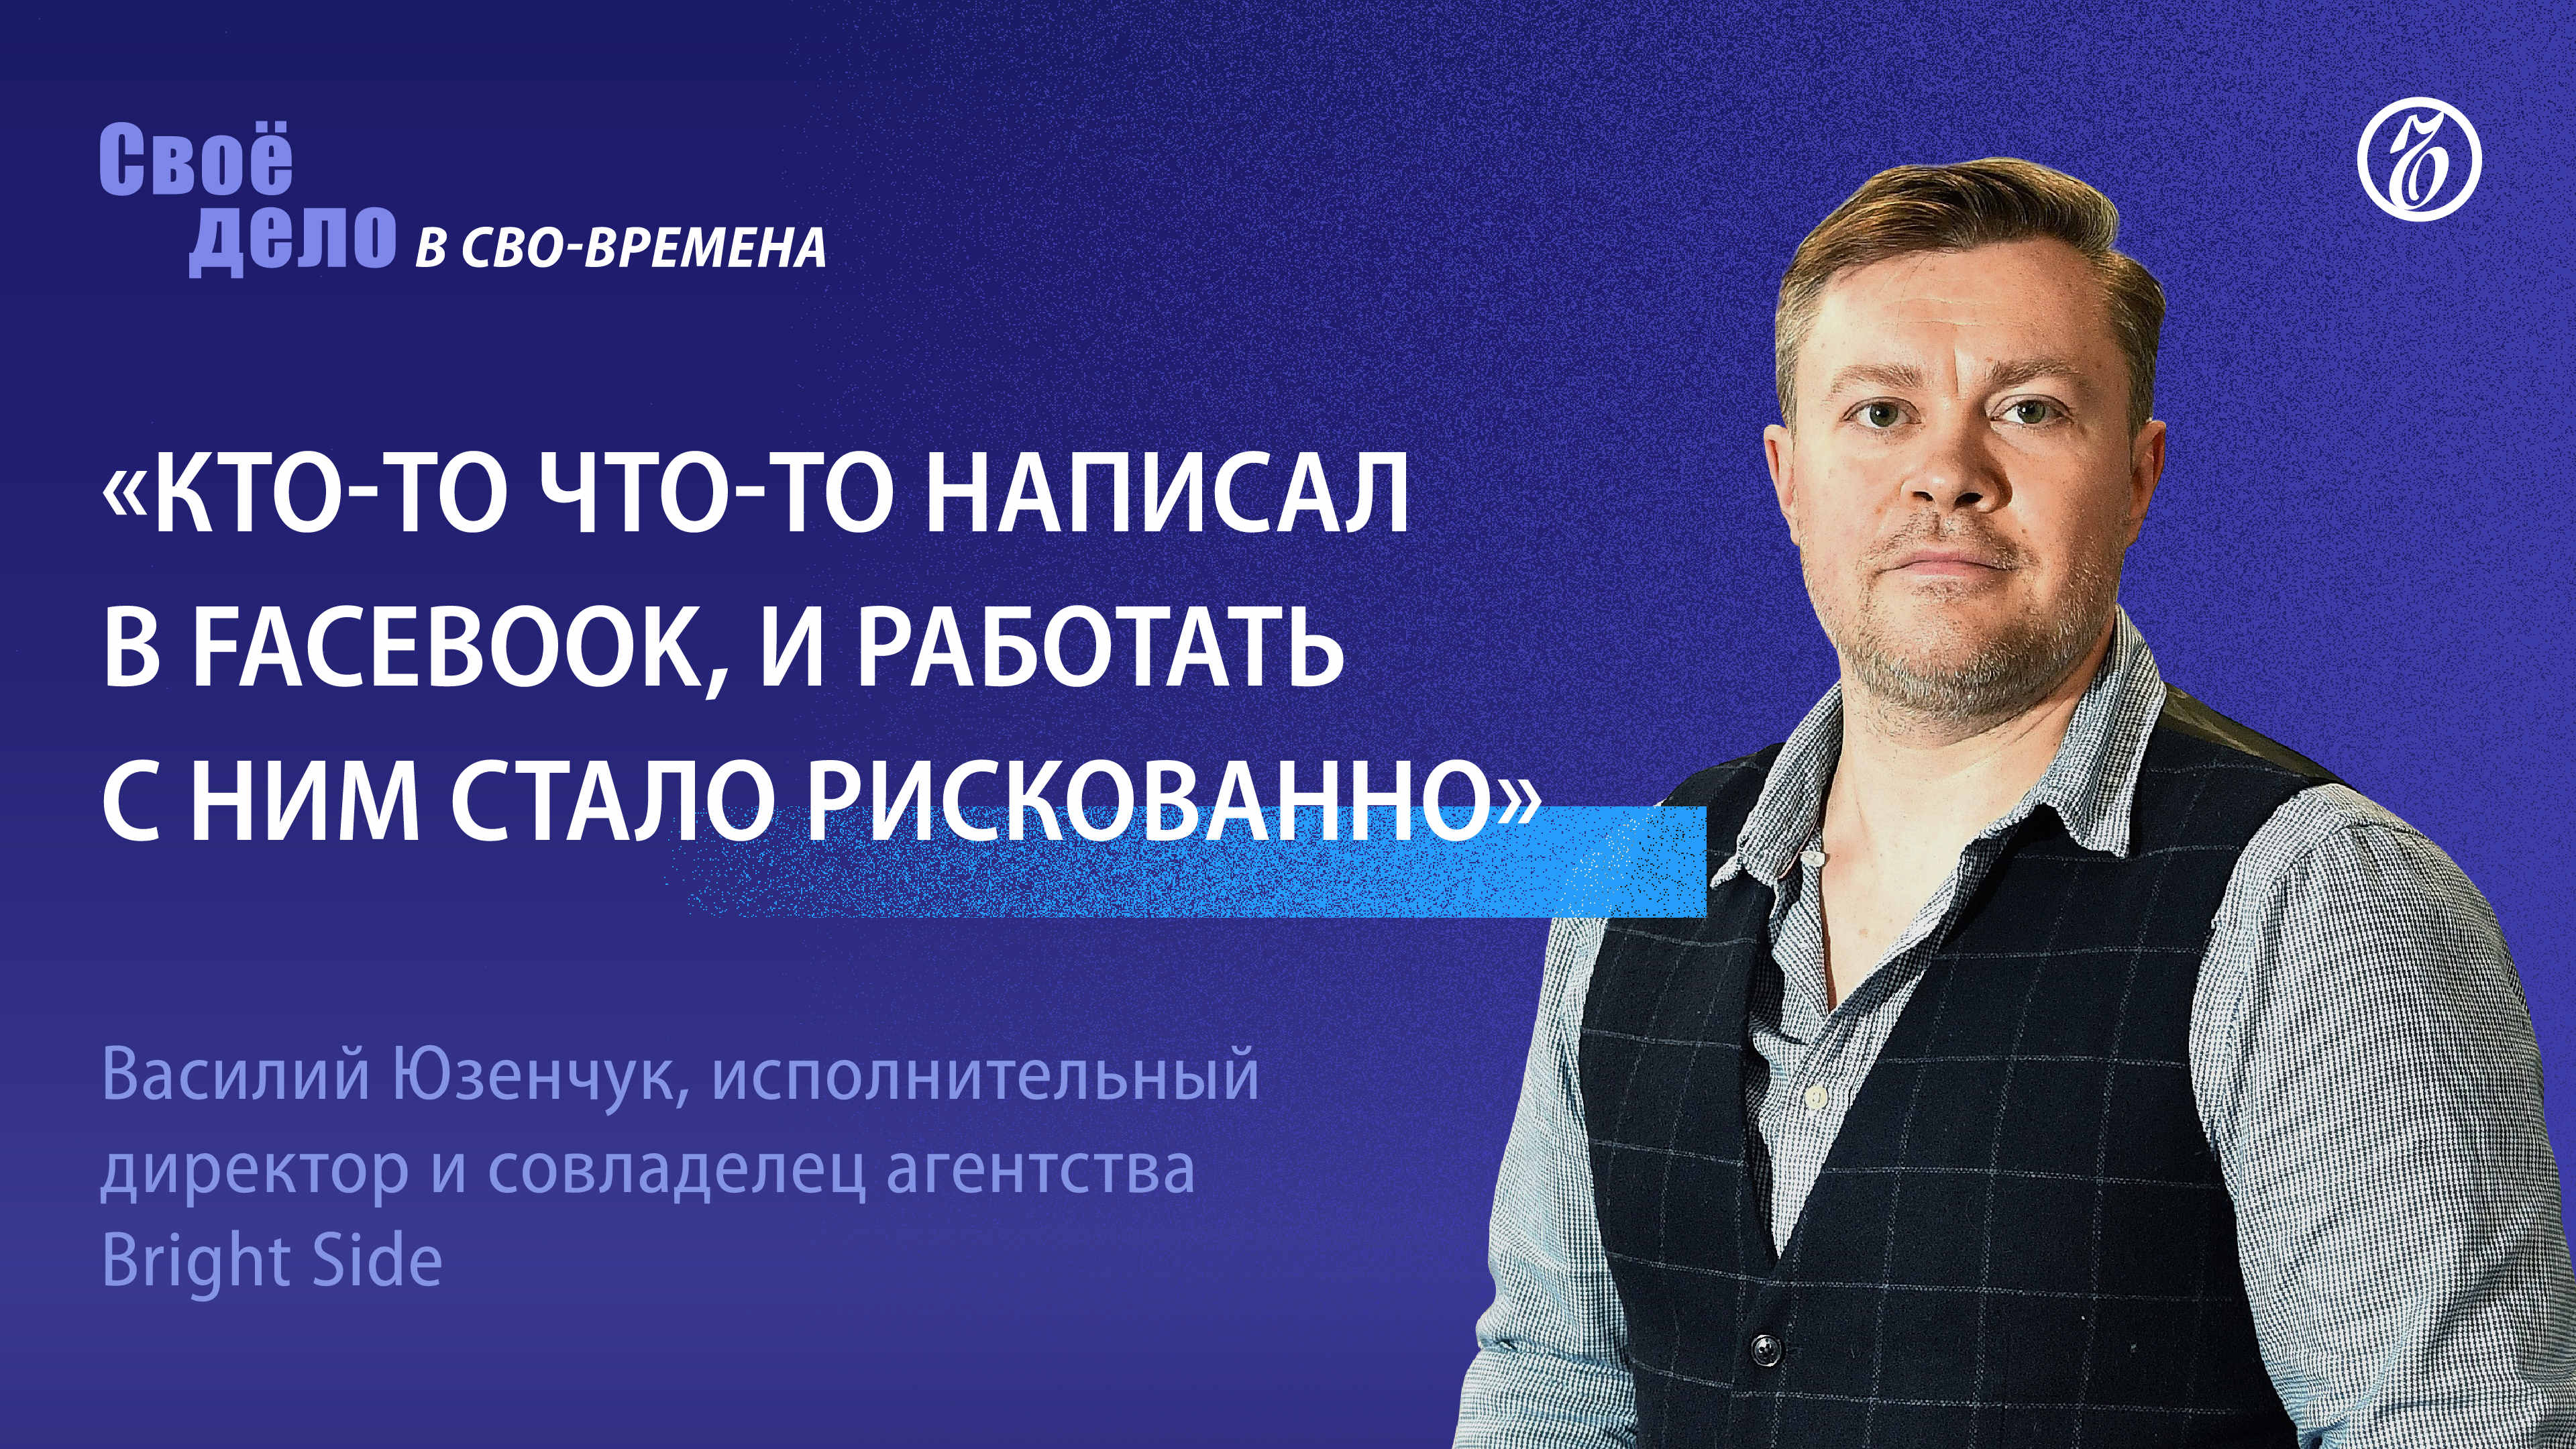 Василий Юзенчук (Bright Side):«Кто-то что-то написал в Facebook и работать с ним стало рискованно»